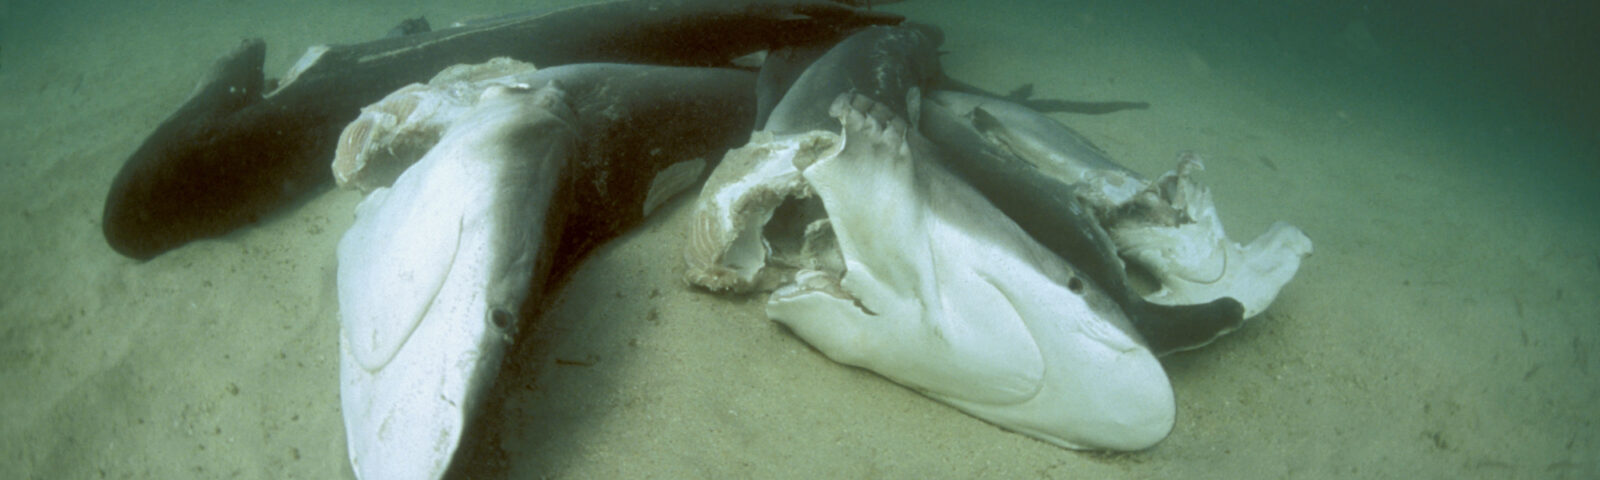 Dykker observerer døde haier på havbunnen, alle har fått hai-finnene kuttet av og er blitt kastet levende overbord for å drukne.